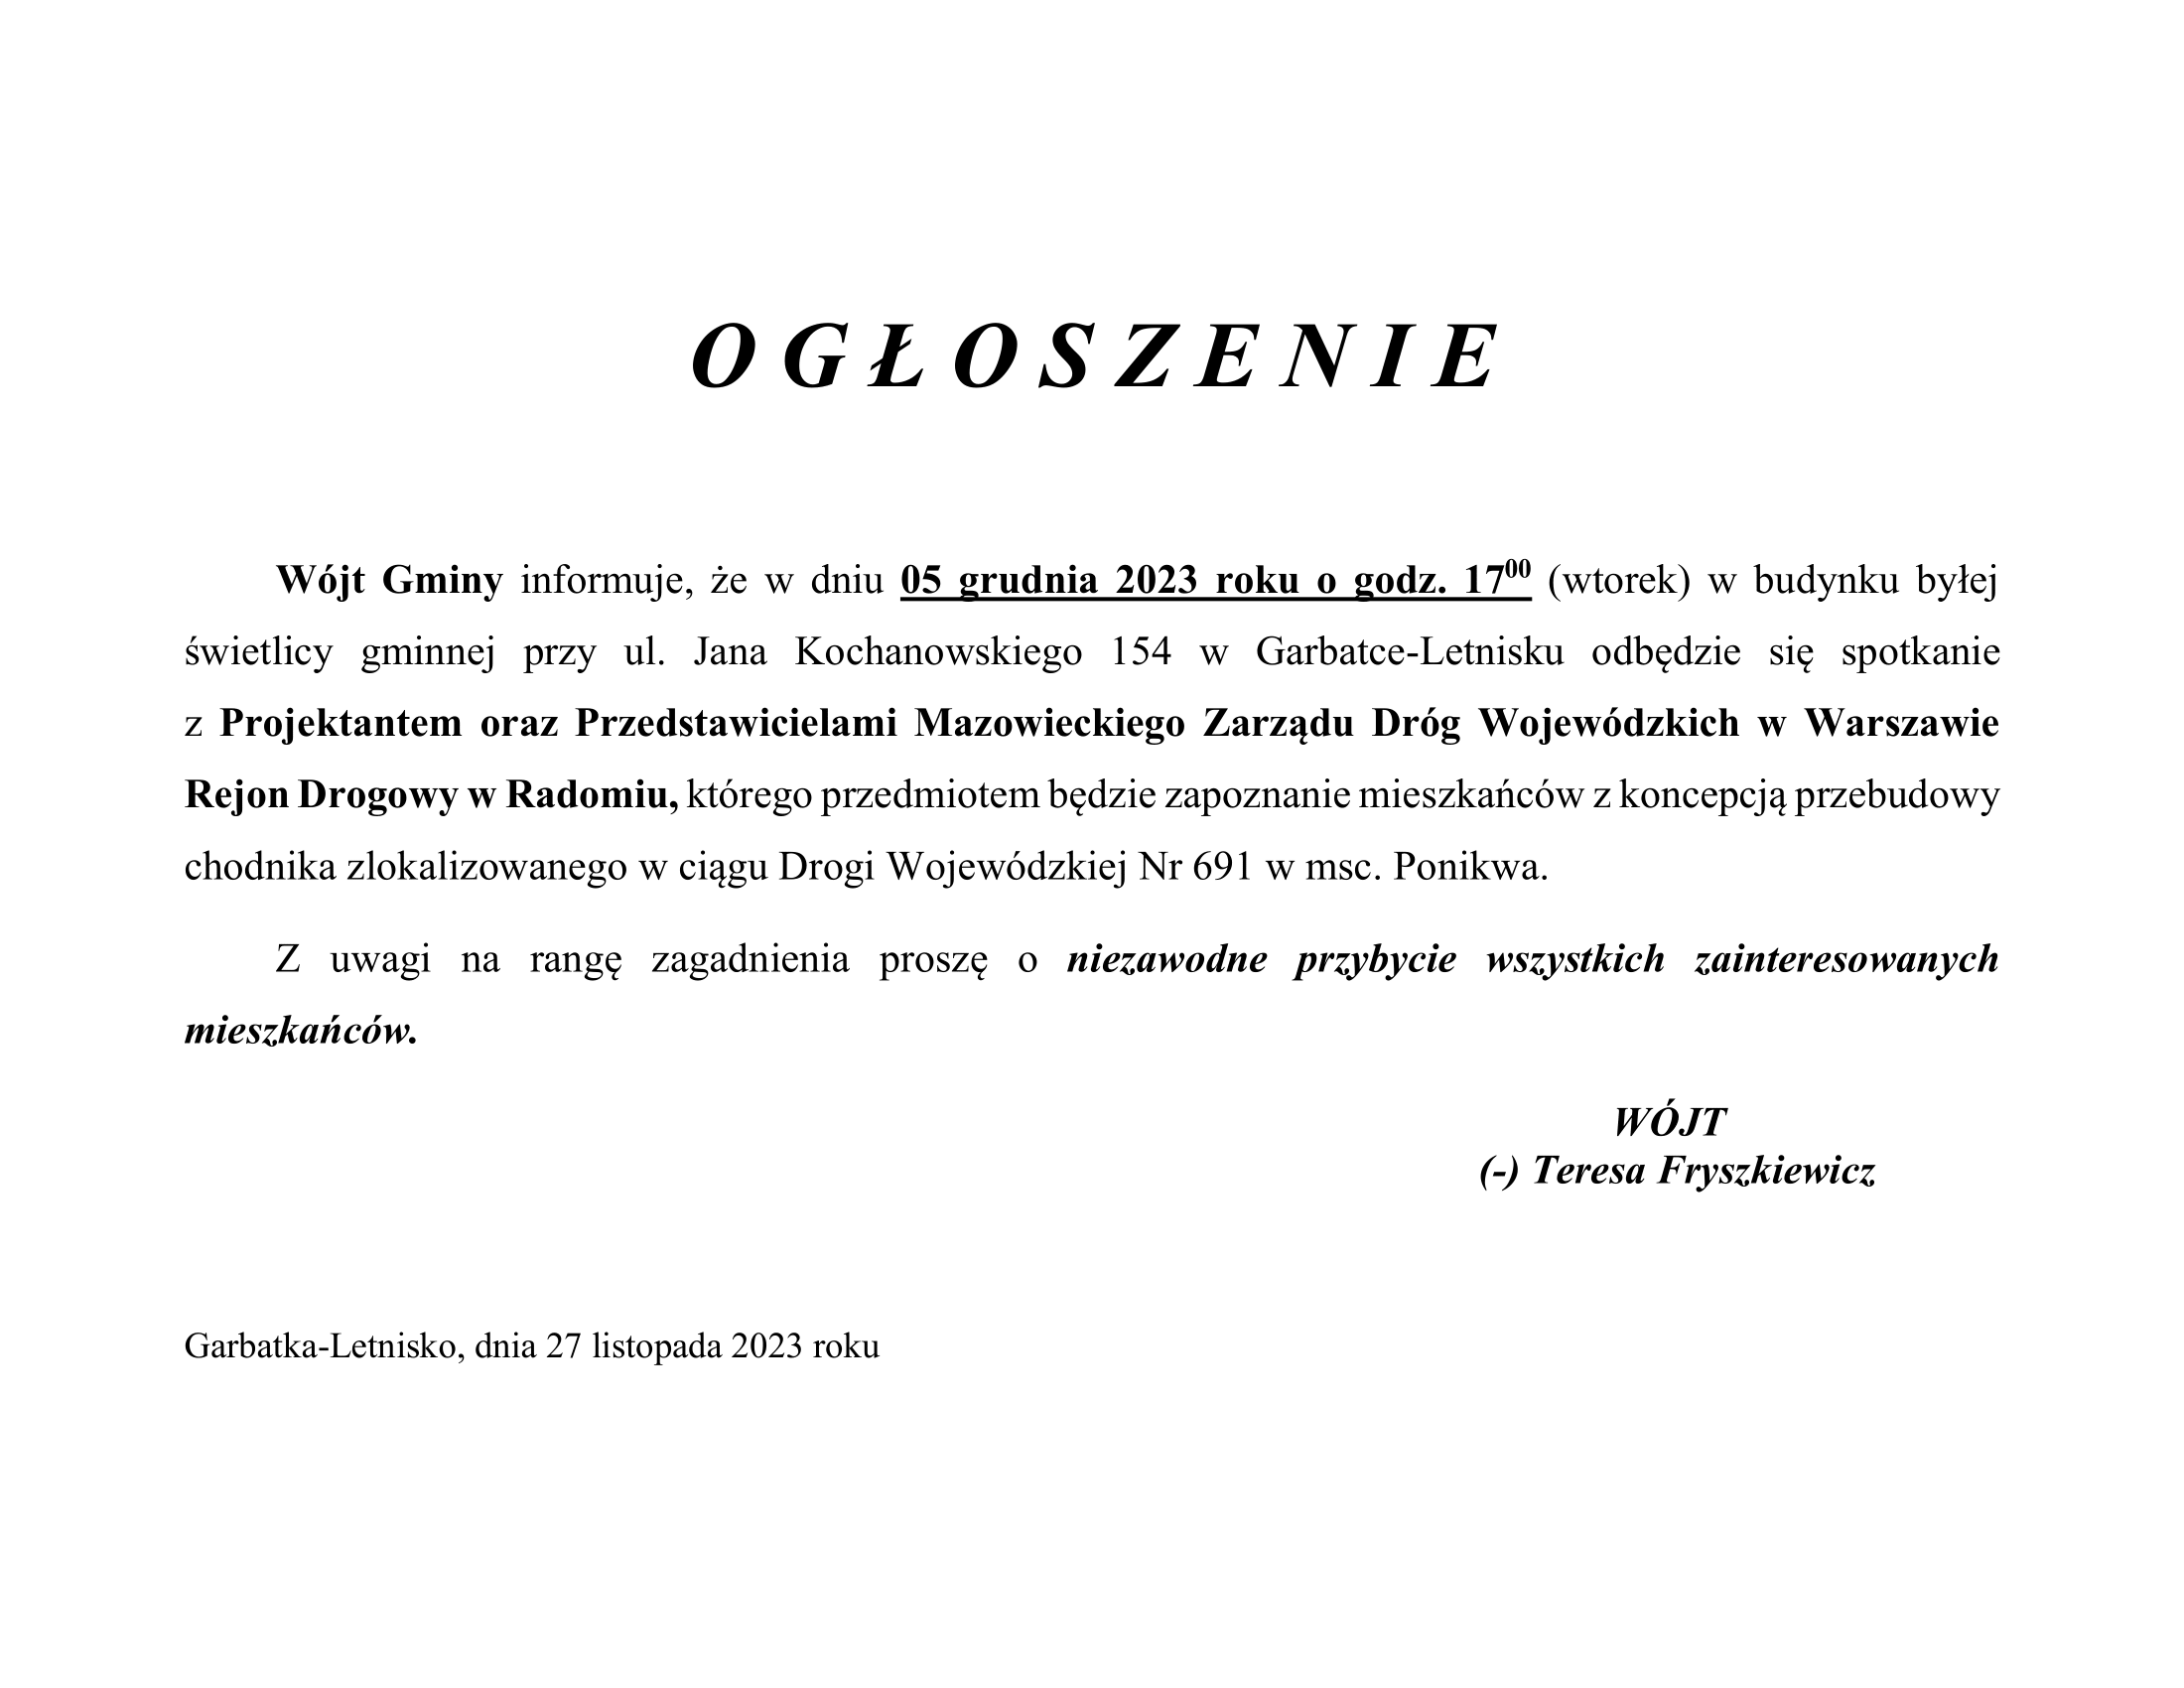 Spotkanie  z Projektantem oraz Przedstawicielami Mazowieckiego Zarządu Dróg Wojewódzkich